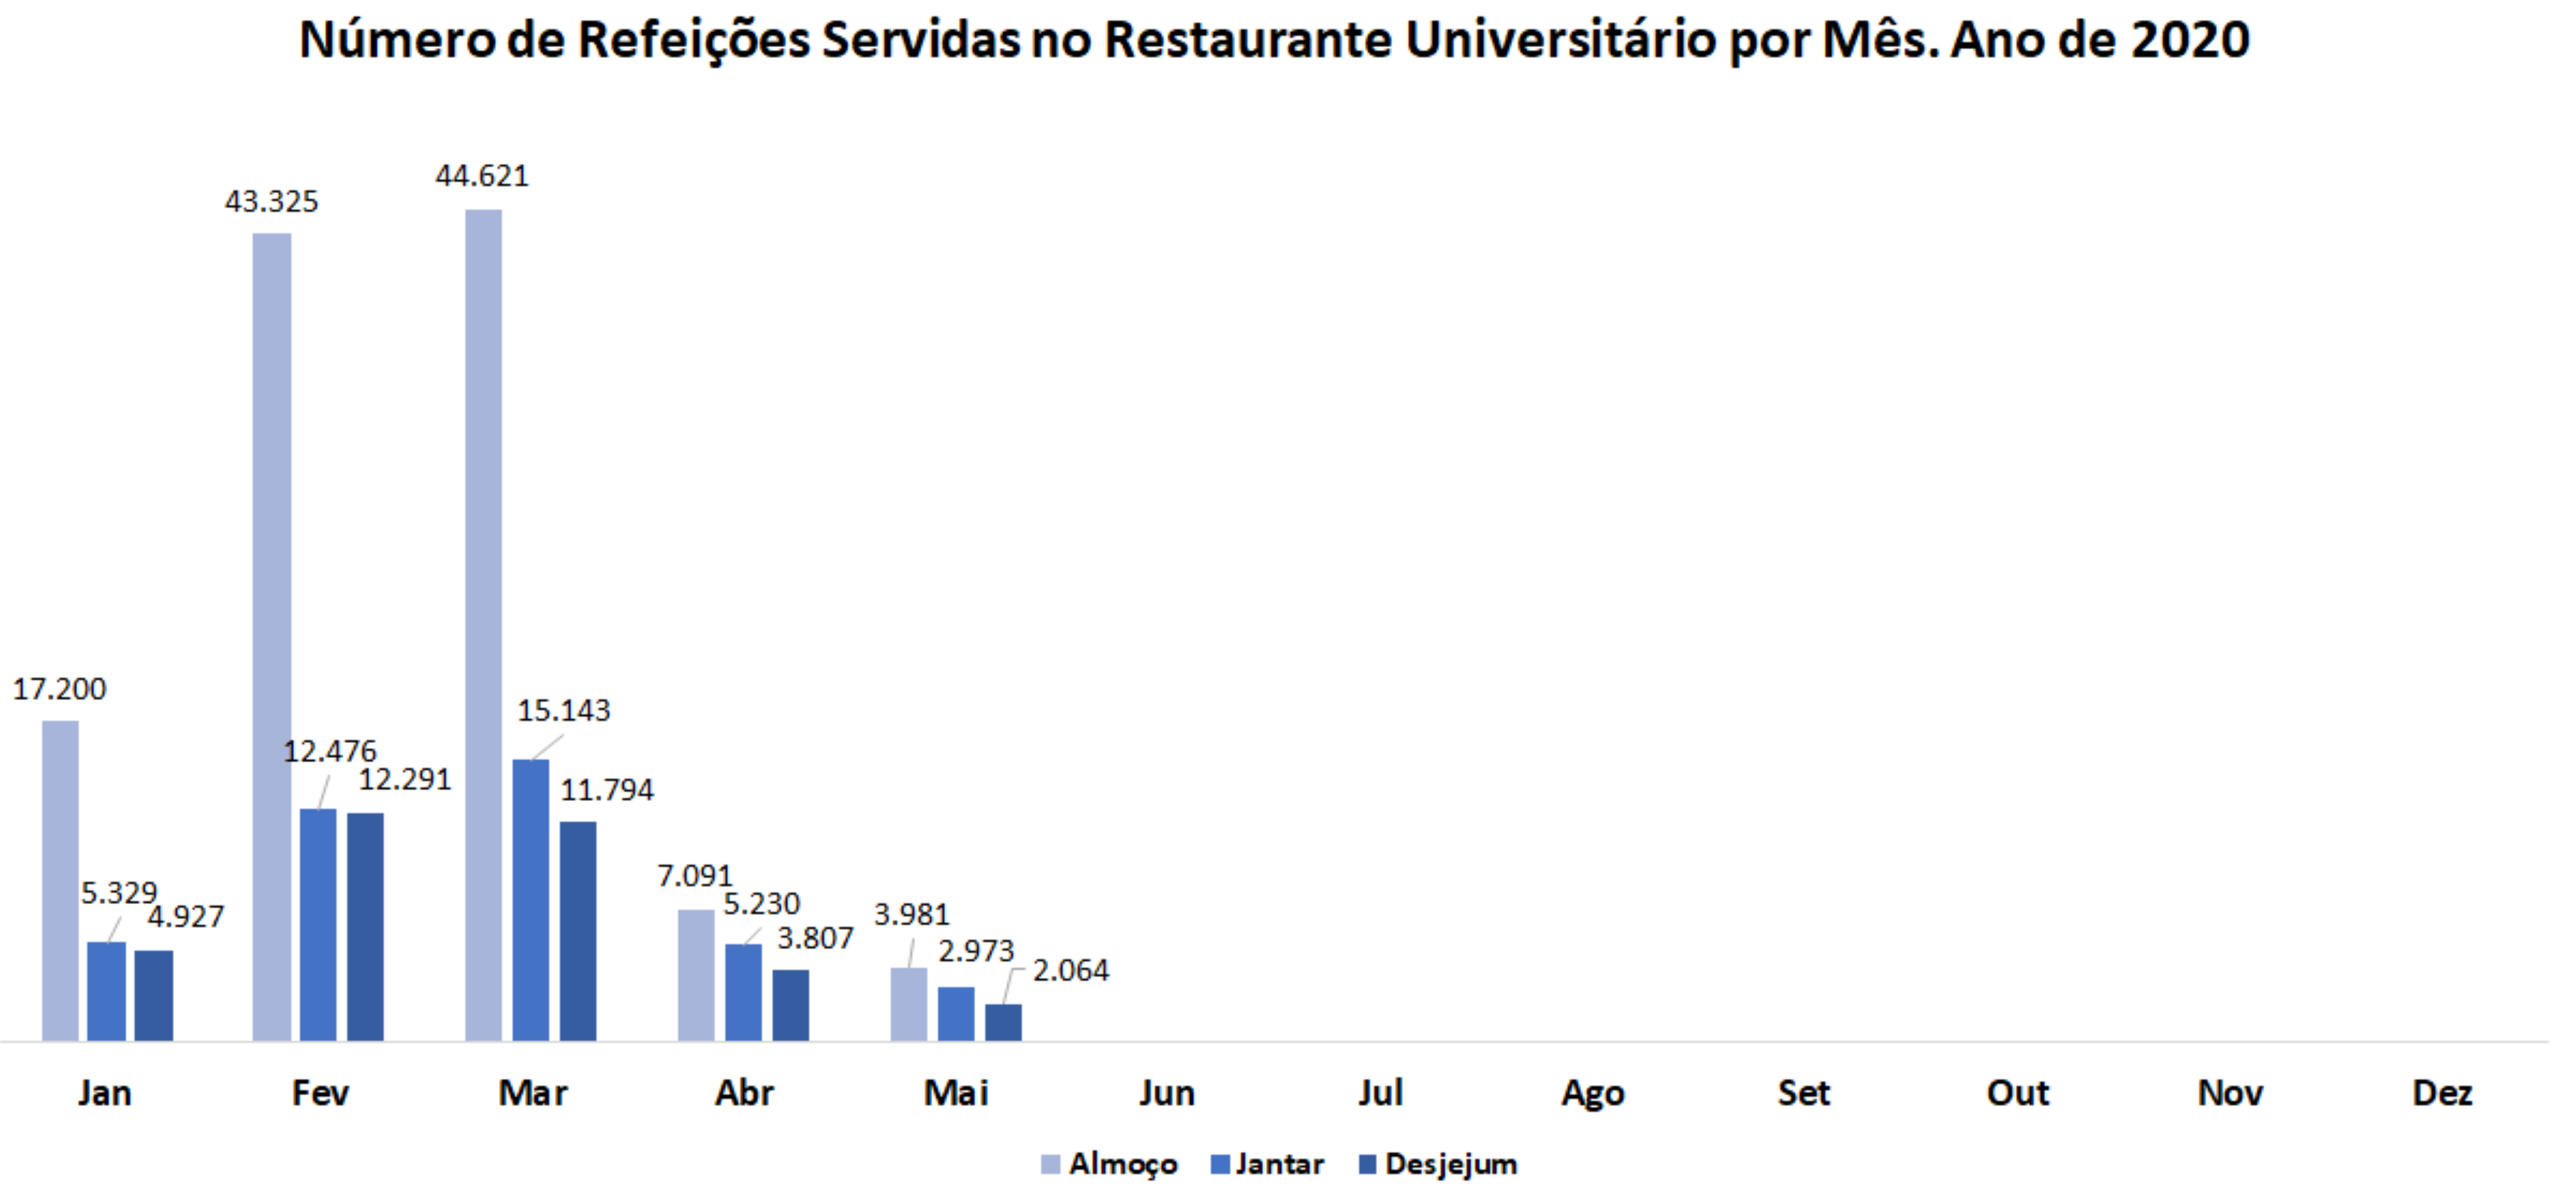 Número de Refeições Servidas no Restaurante Universitário por Mês, Jan.-Dez. 2020